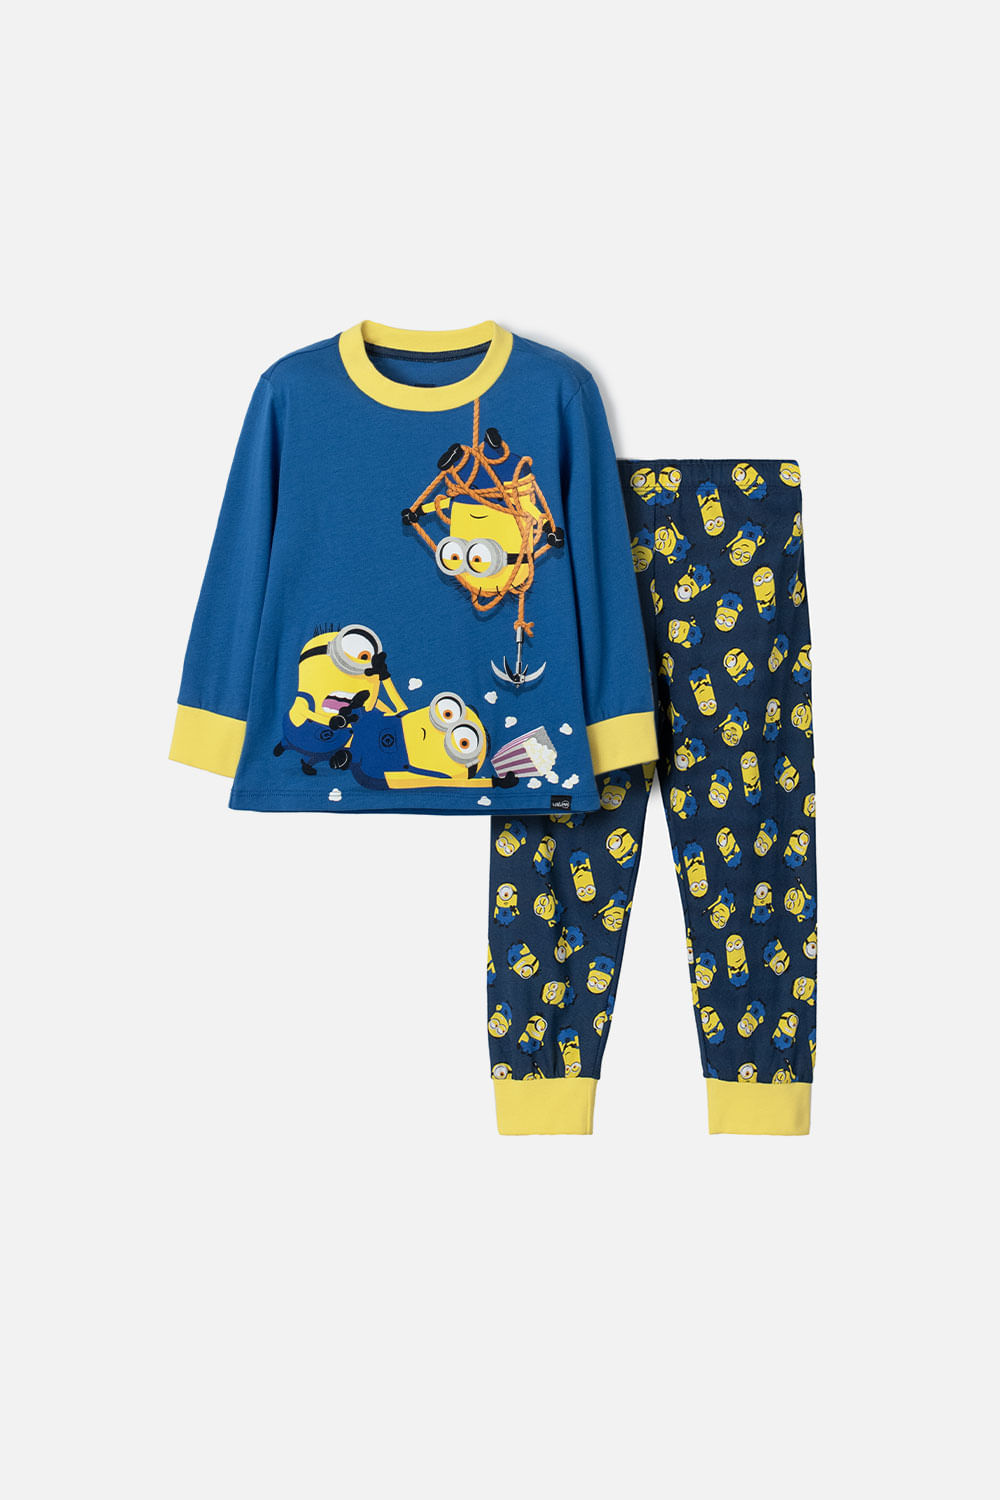 Pijama de Minions azul de camiseta manga larga para niño 2T a 5T 2T-0